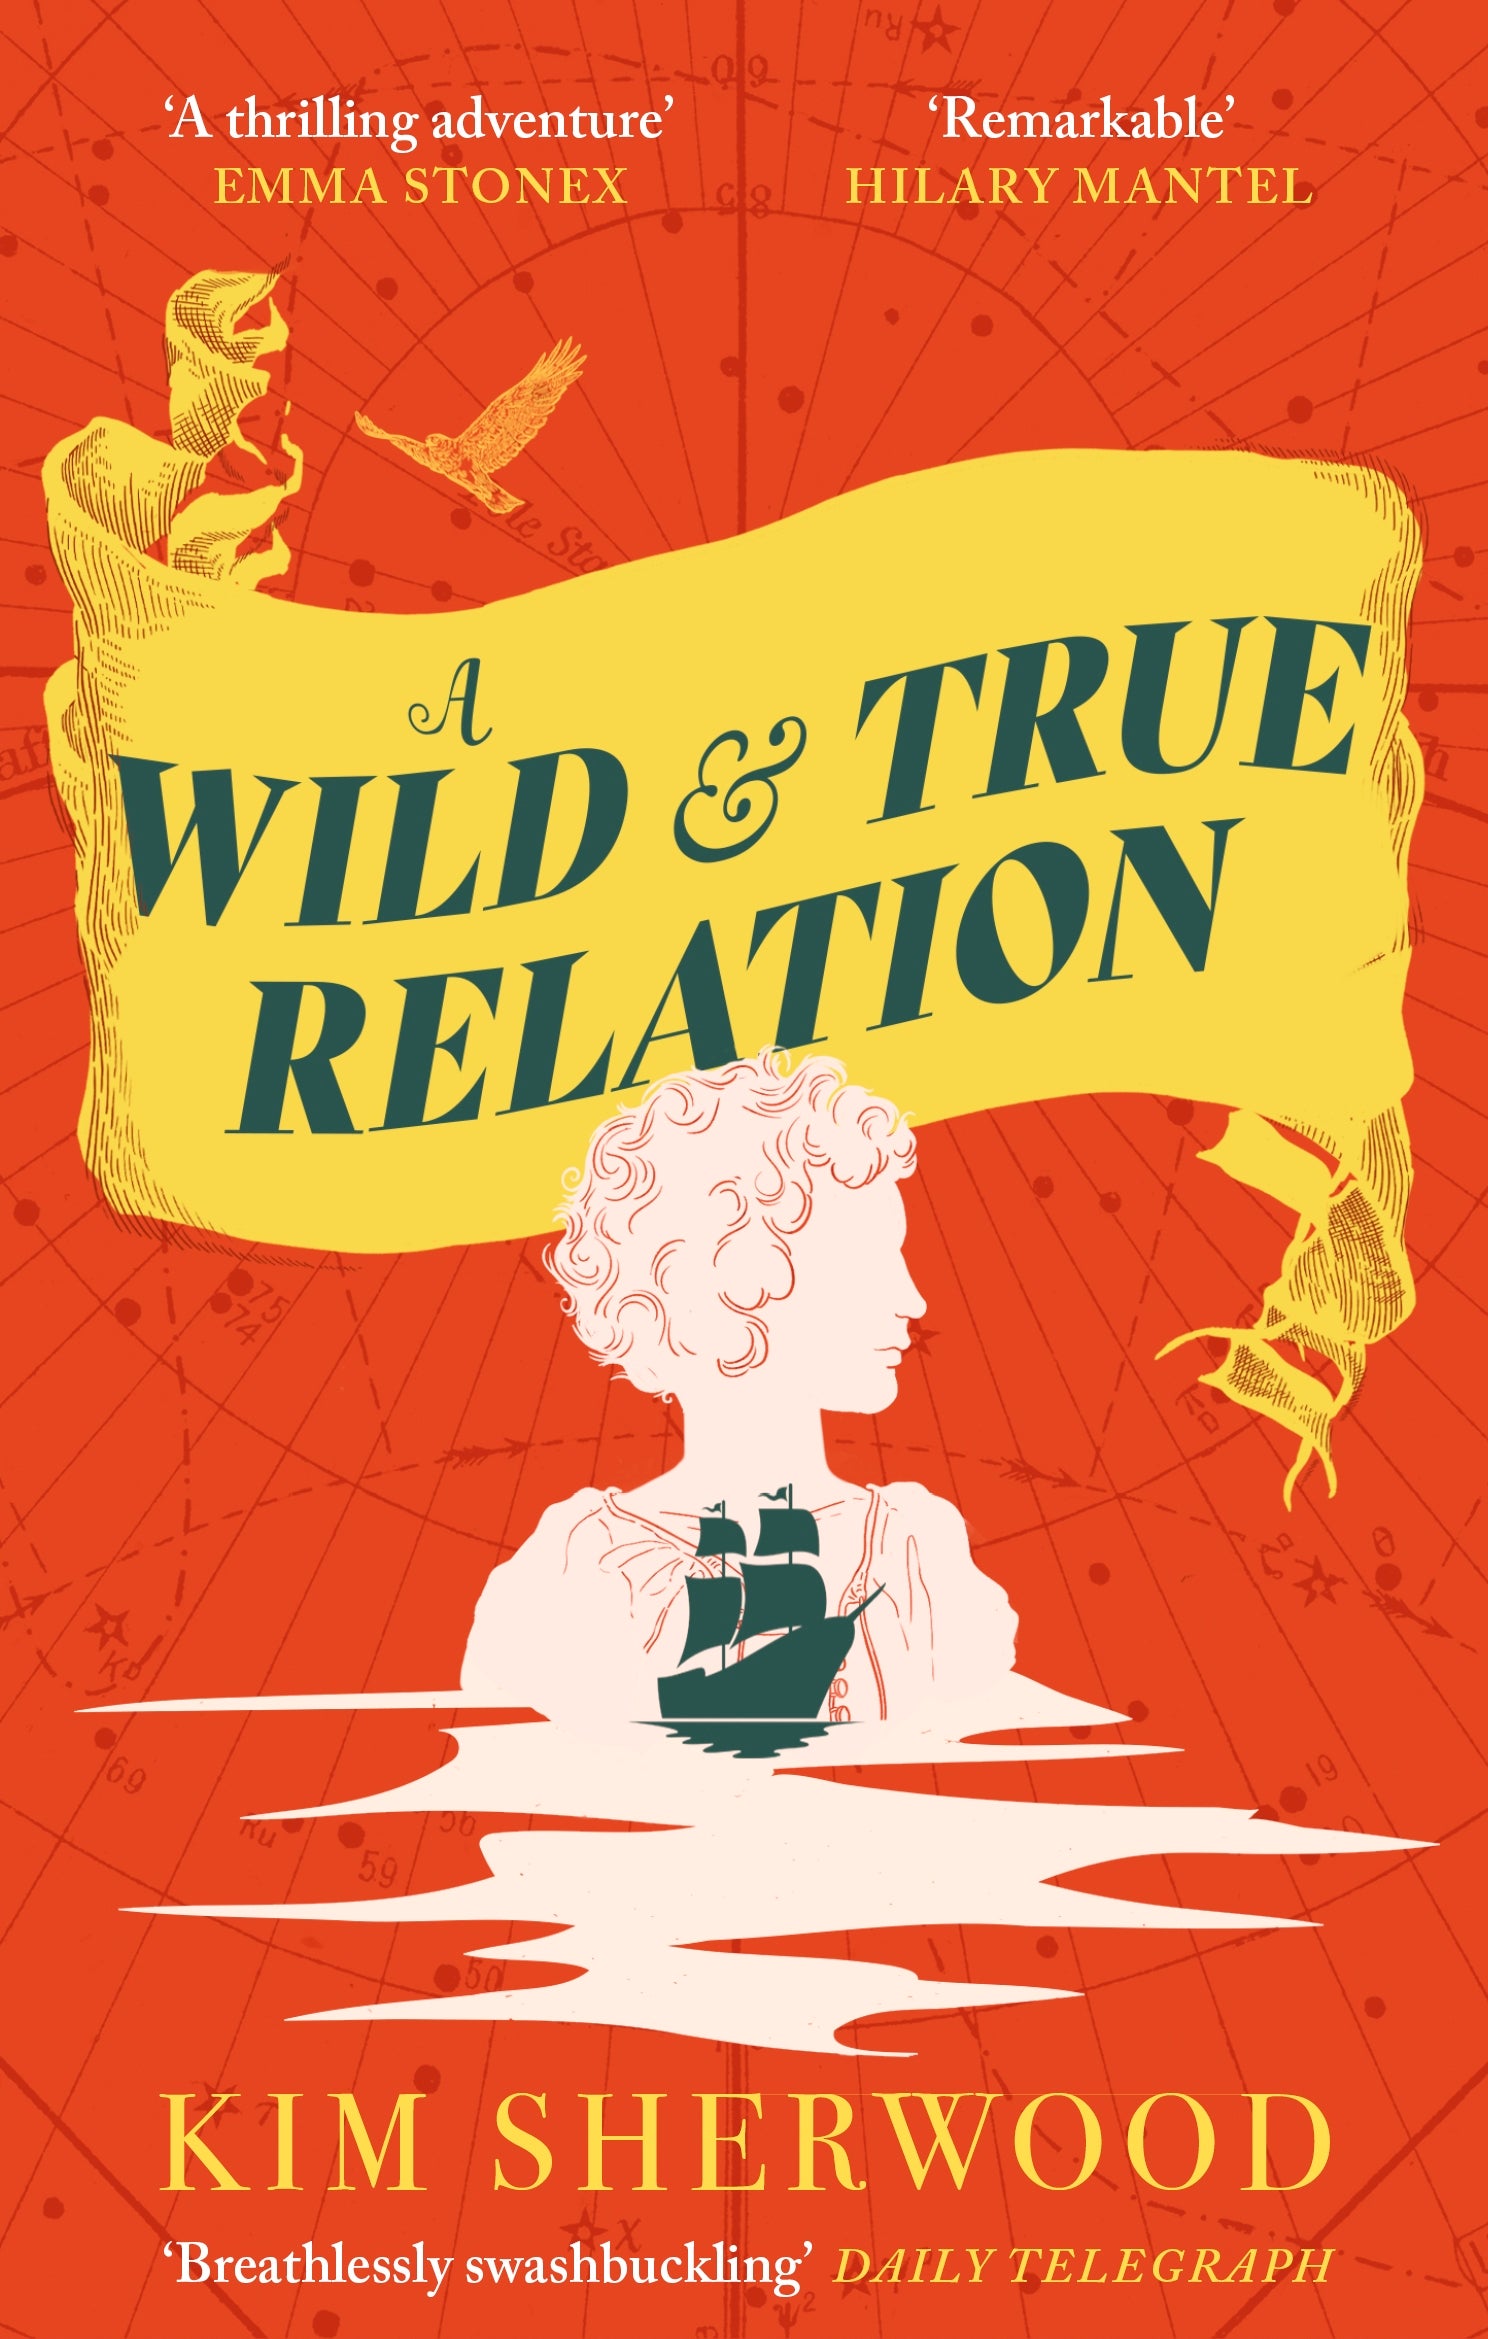 A Wild & True Relation by Kim Sherwood